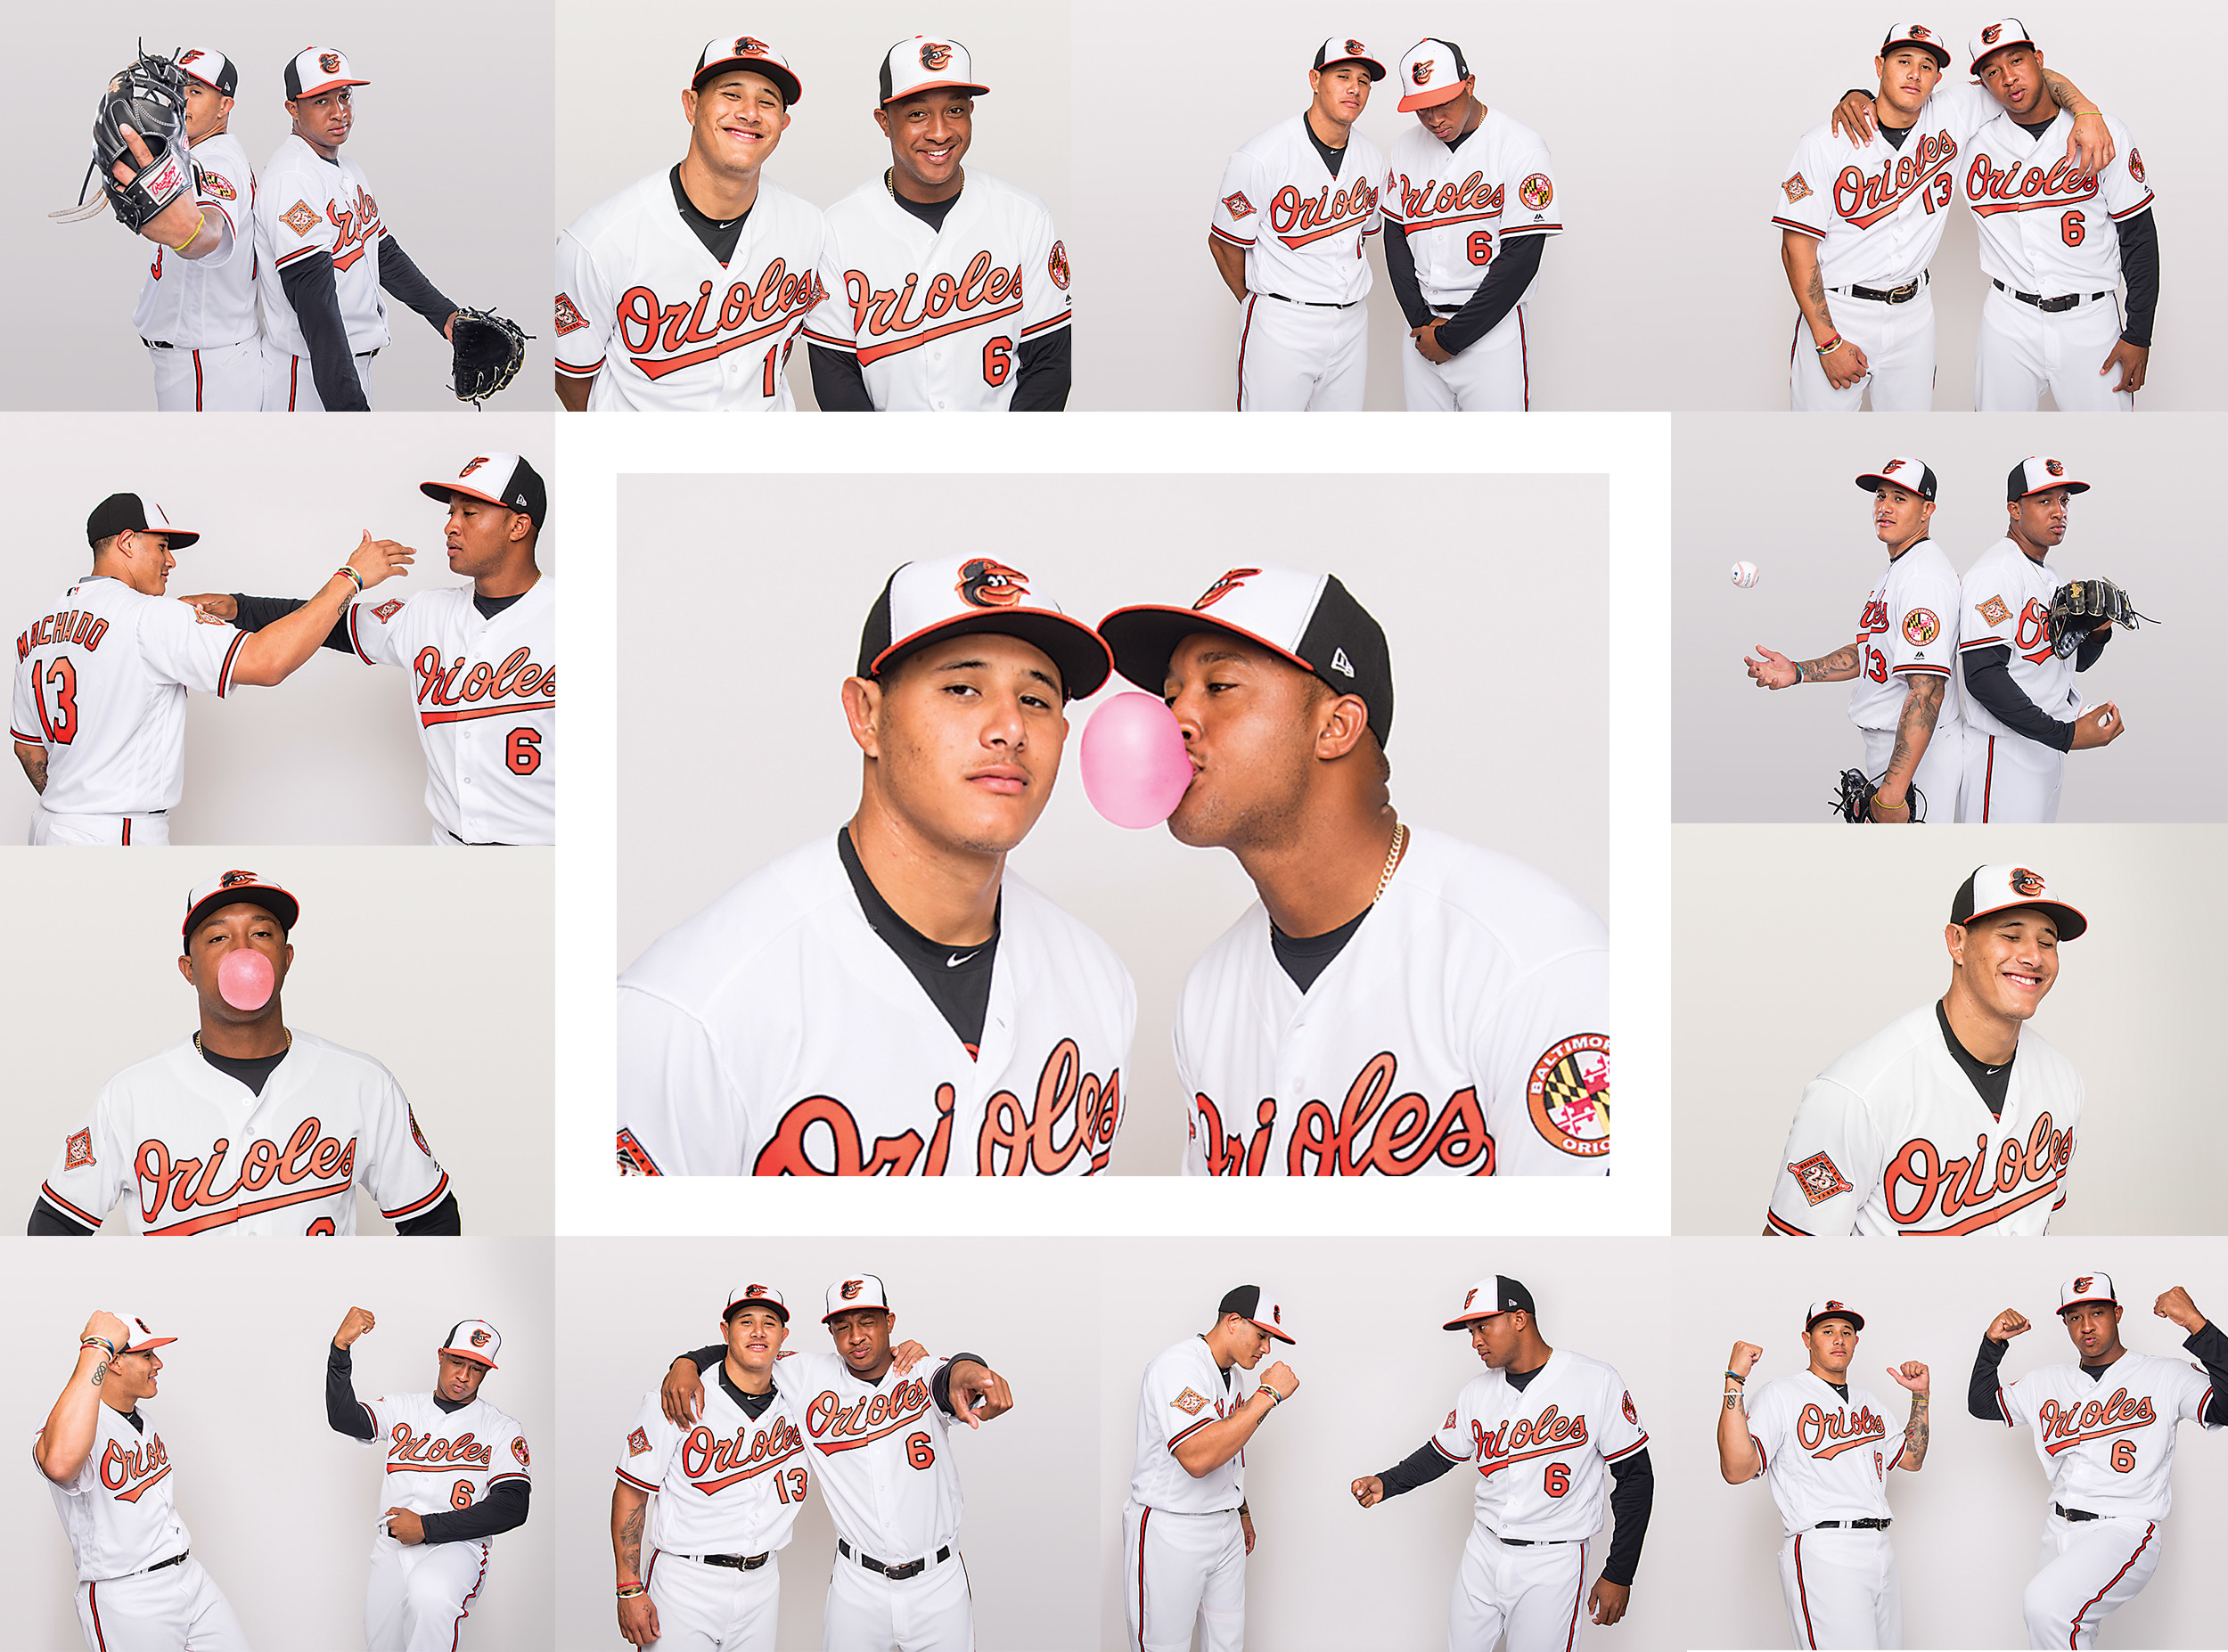 Baltimore Orioles: Enjoy Manny Machado while you can